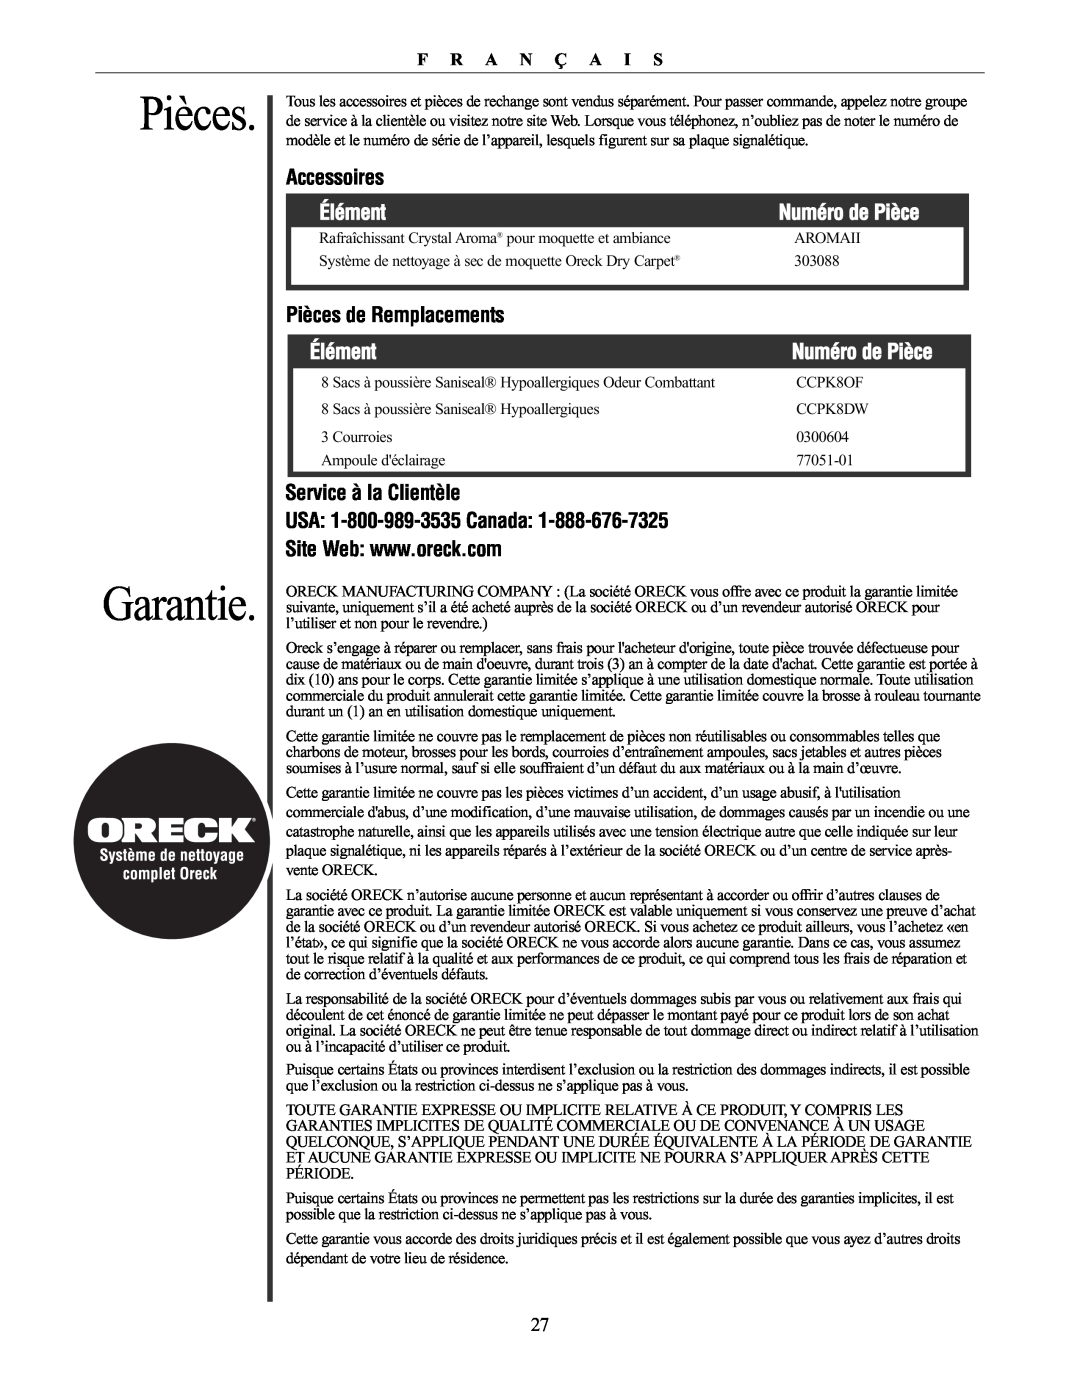 Oreck 76011-01REVC Pièces Garantie, Accessoires, Élément, Numéro de Pièce, Pièces de Remplacements, Service à la Clientèle 